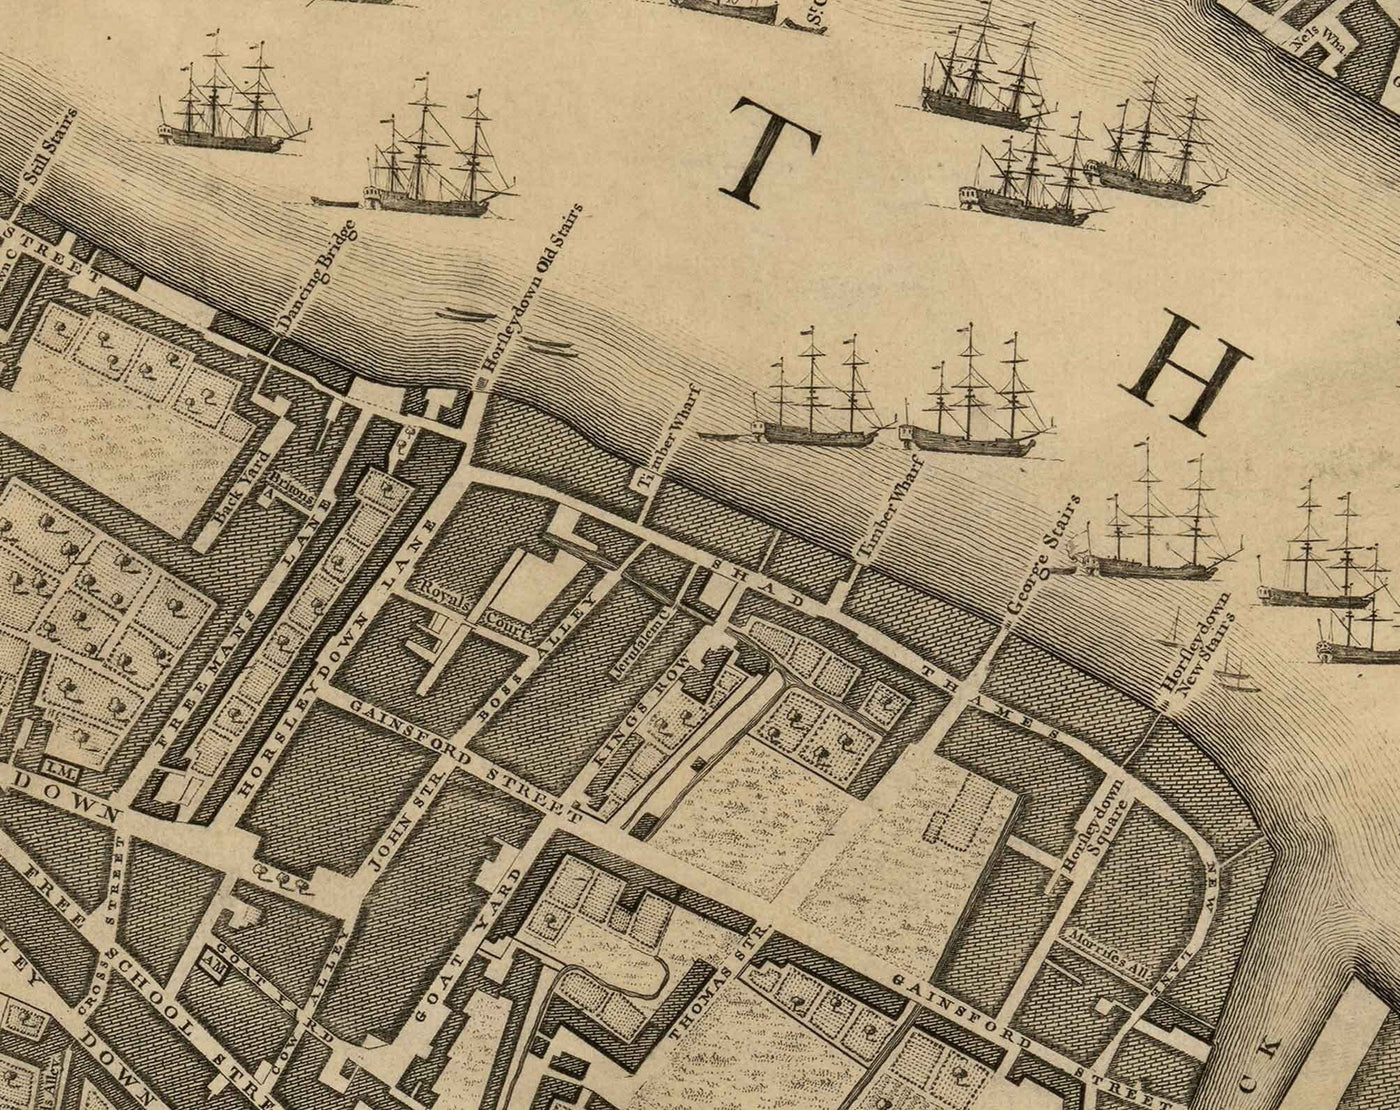 Alte Karte von London von John Rocque, 1746, F2 - Tower of London, Shad Thames, St Katherine Dock, Tower Hamlets, Bermondsey